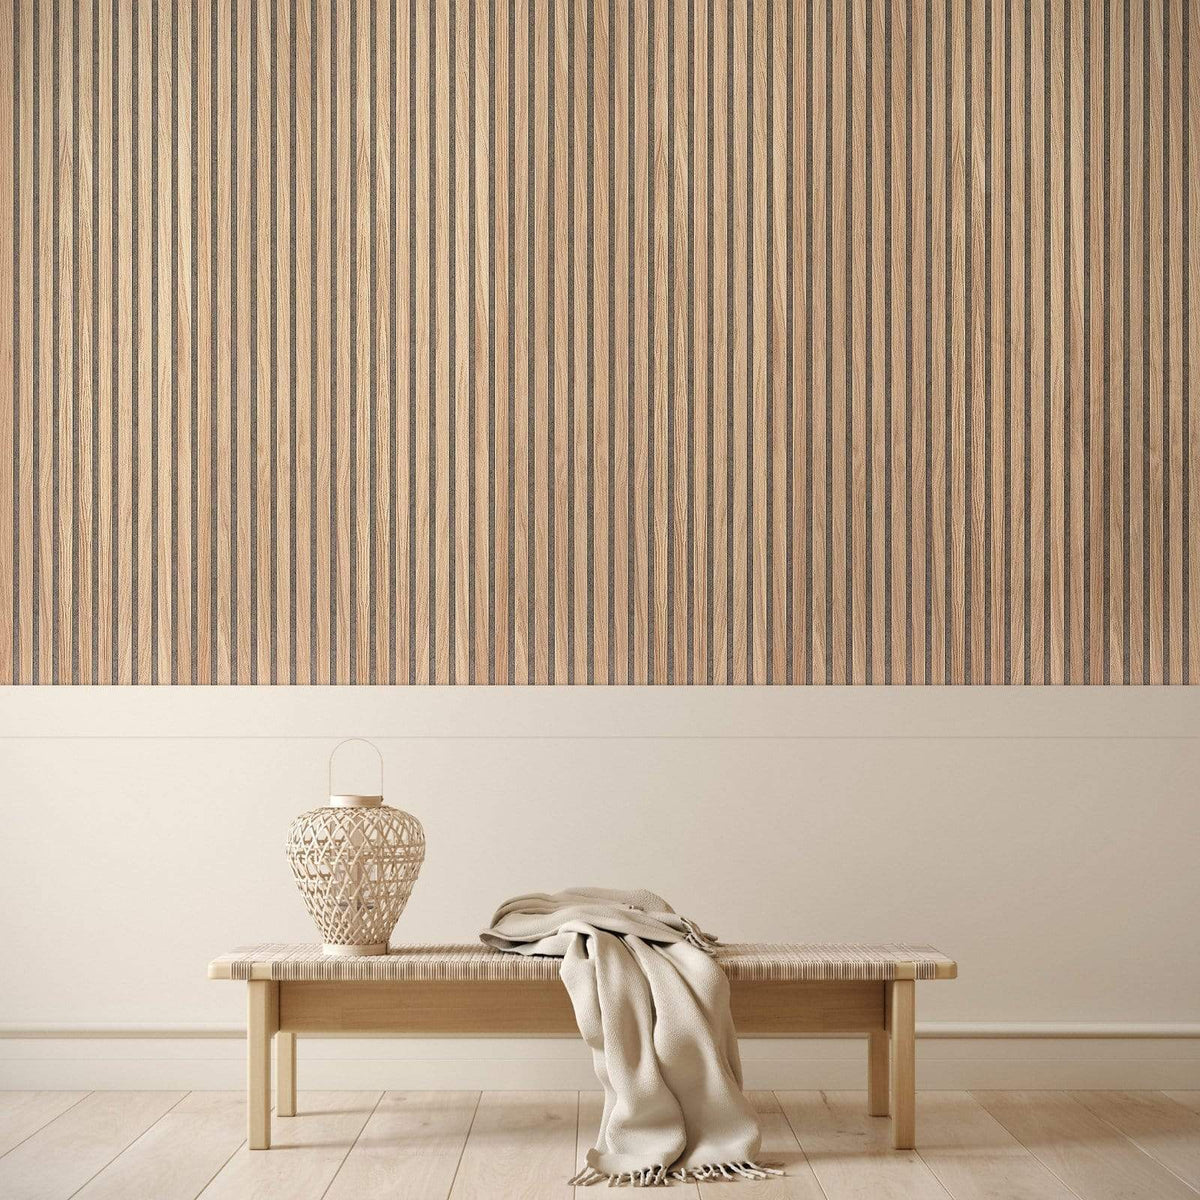 White Oak Solid Wood Slat Wall Panels - for Sale, Buy Online